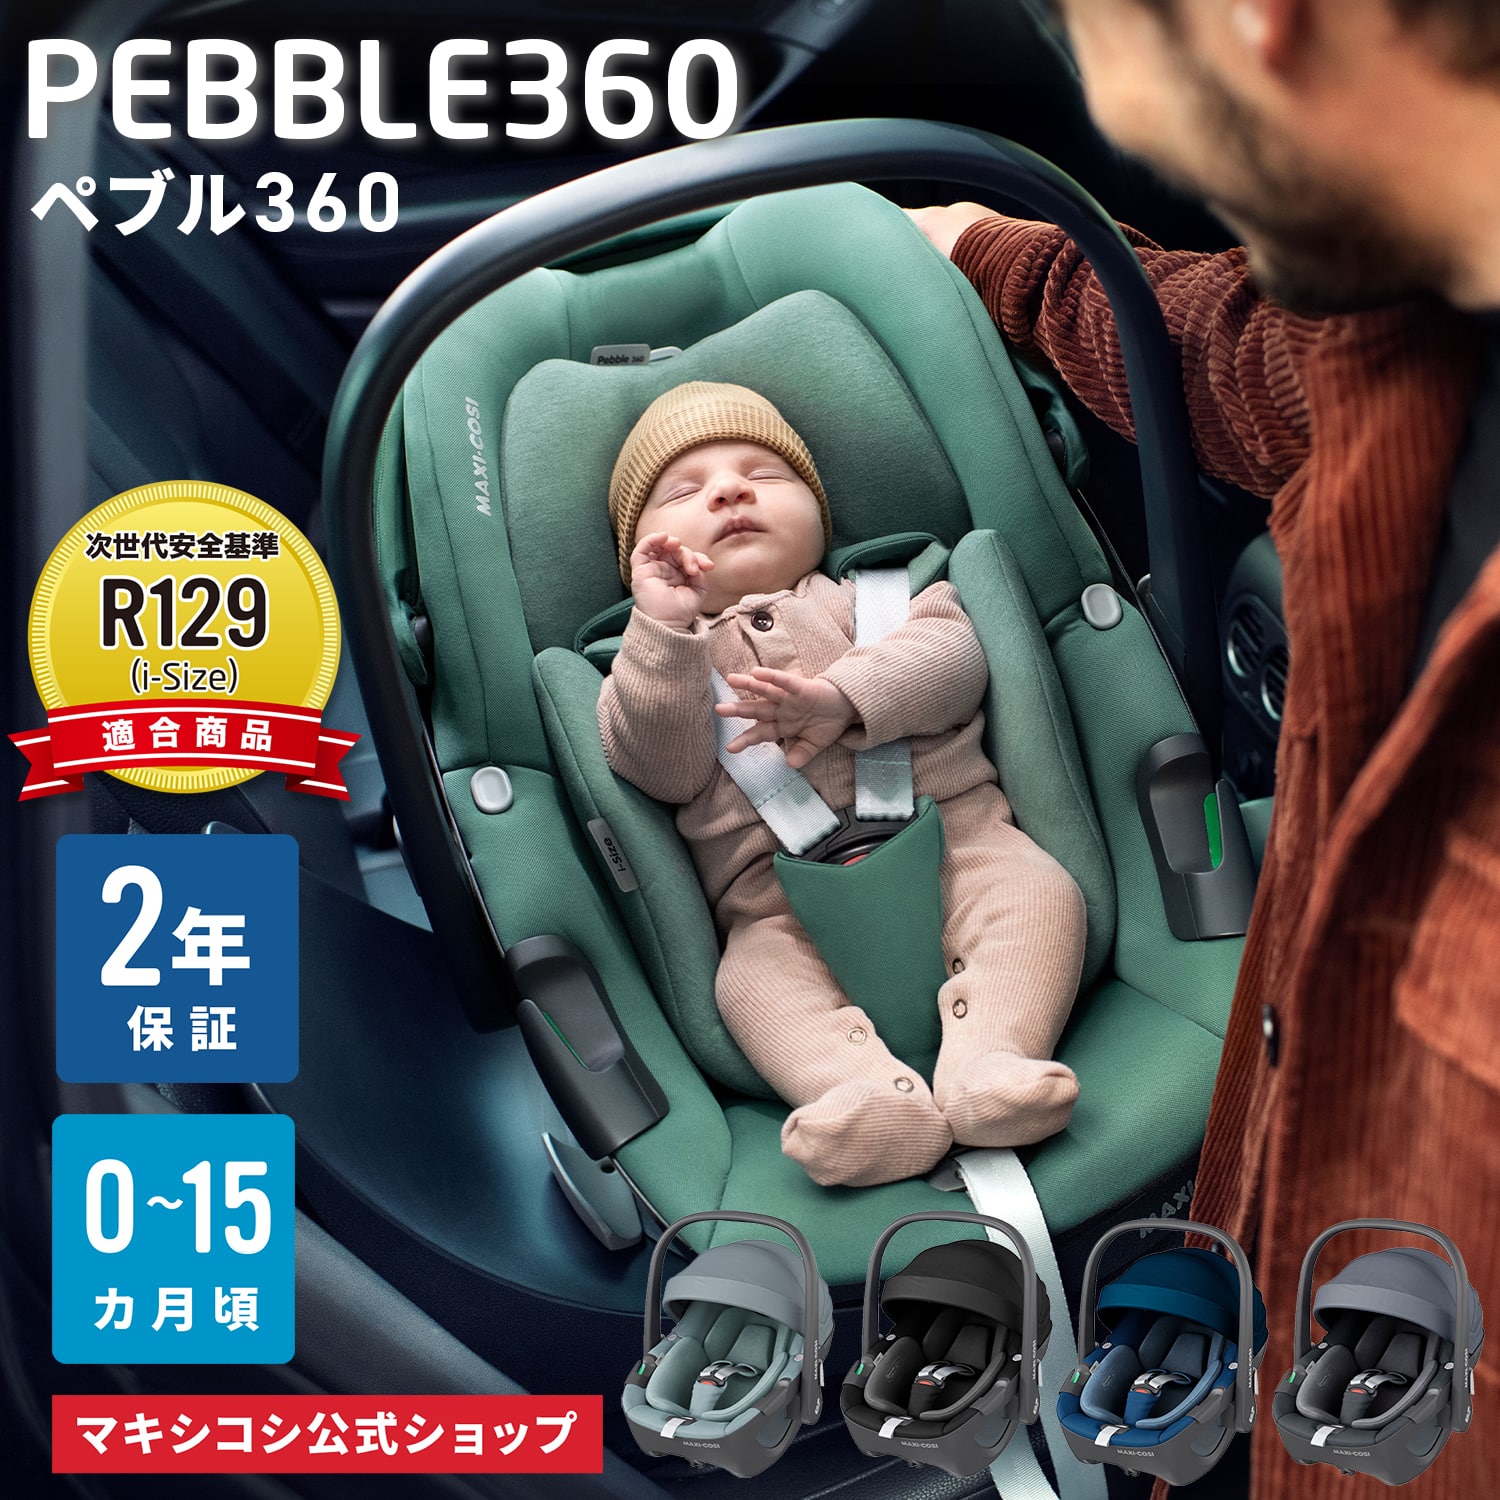 マキシコシペブル360 maxicosi pebble 360 外出/移動用品